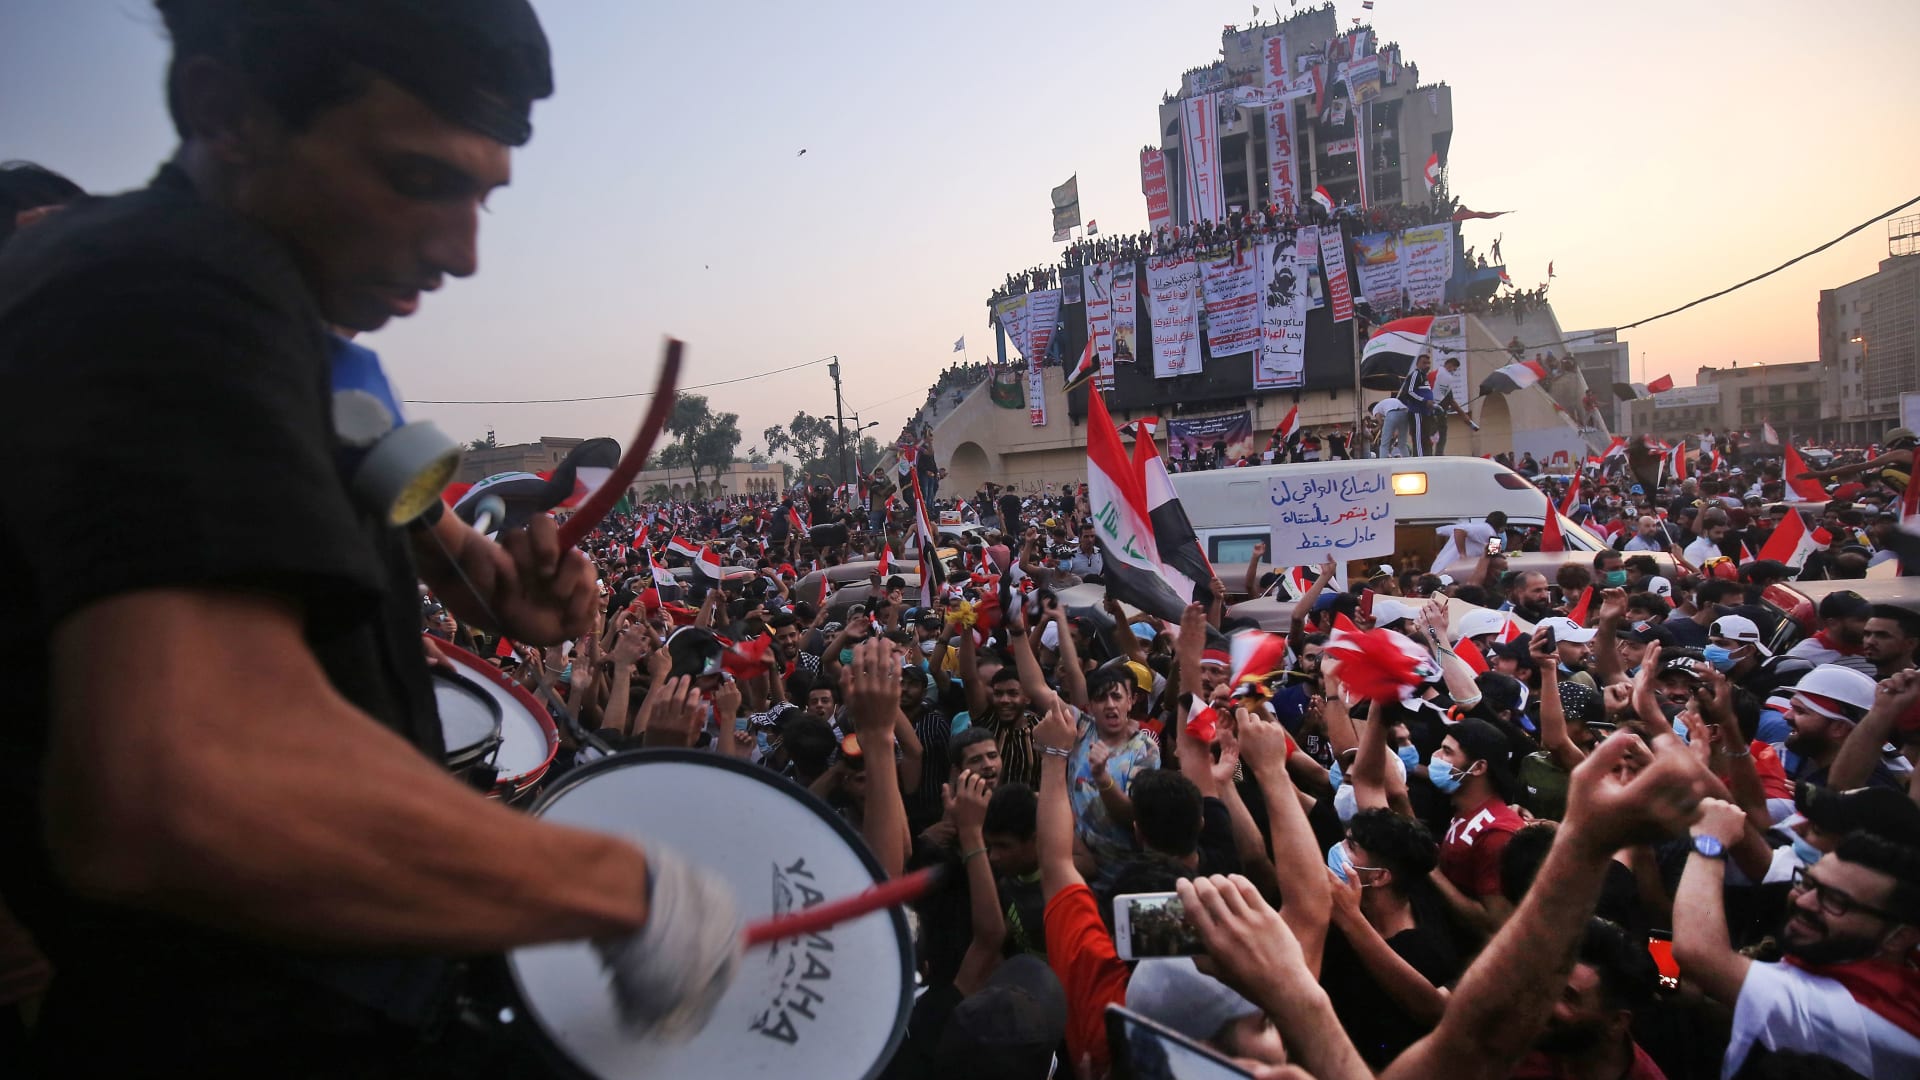 مظاهرات العراق تخطت حدود الطائفية بغضب شعبي ضد الفساد